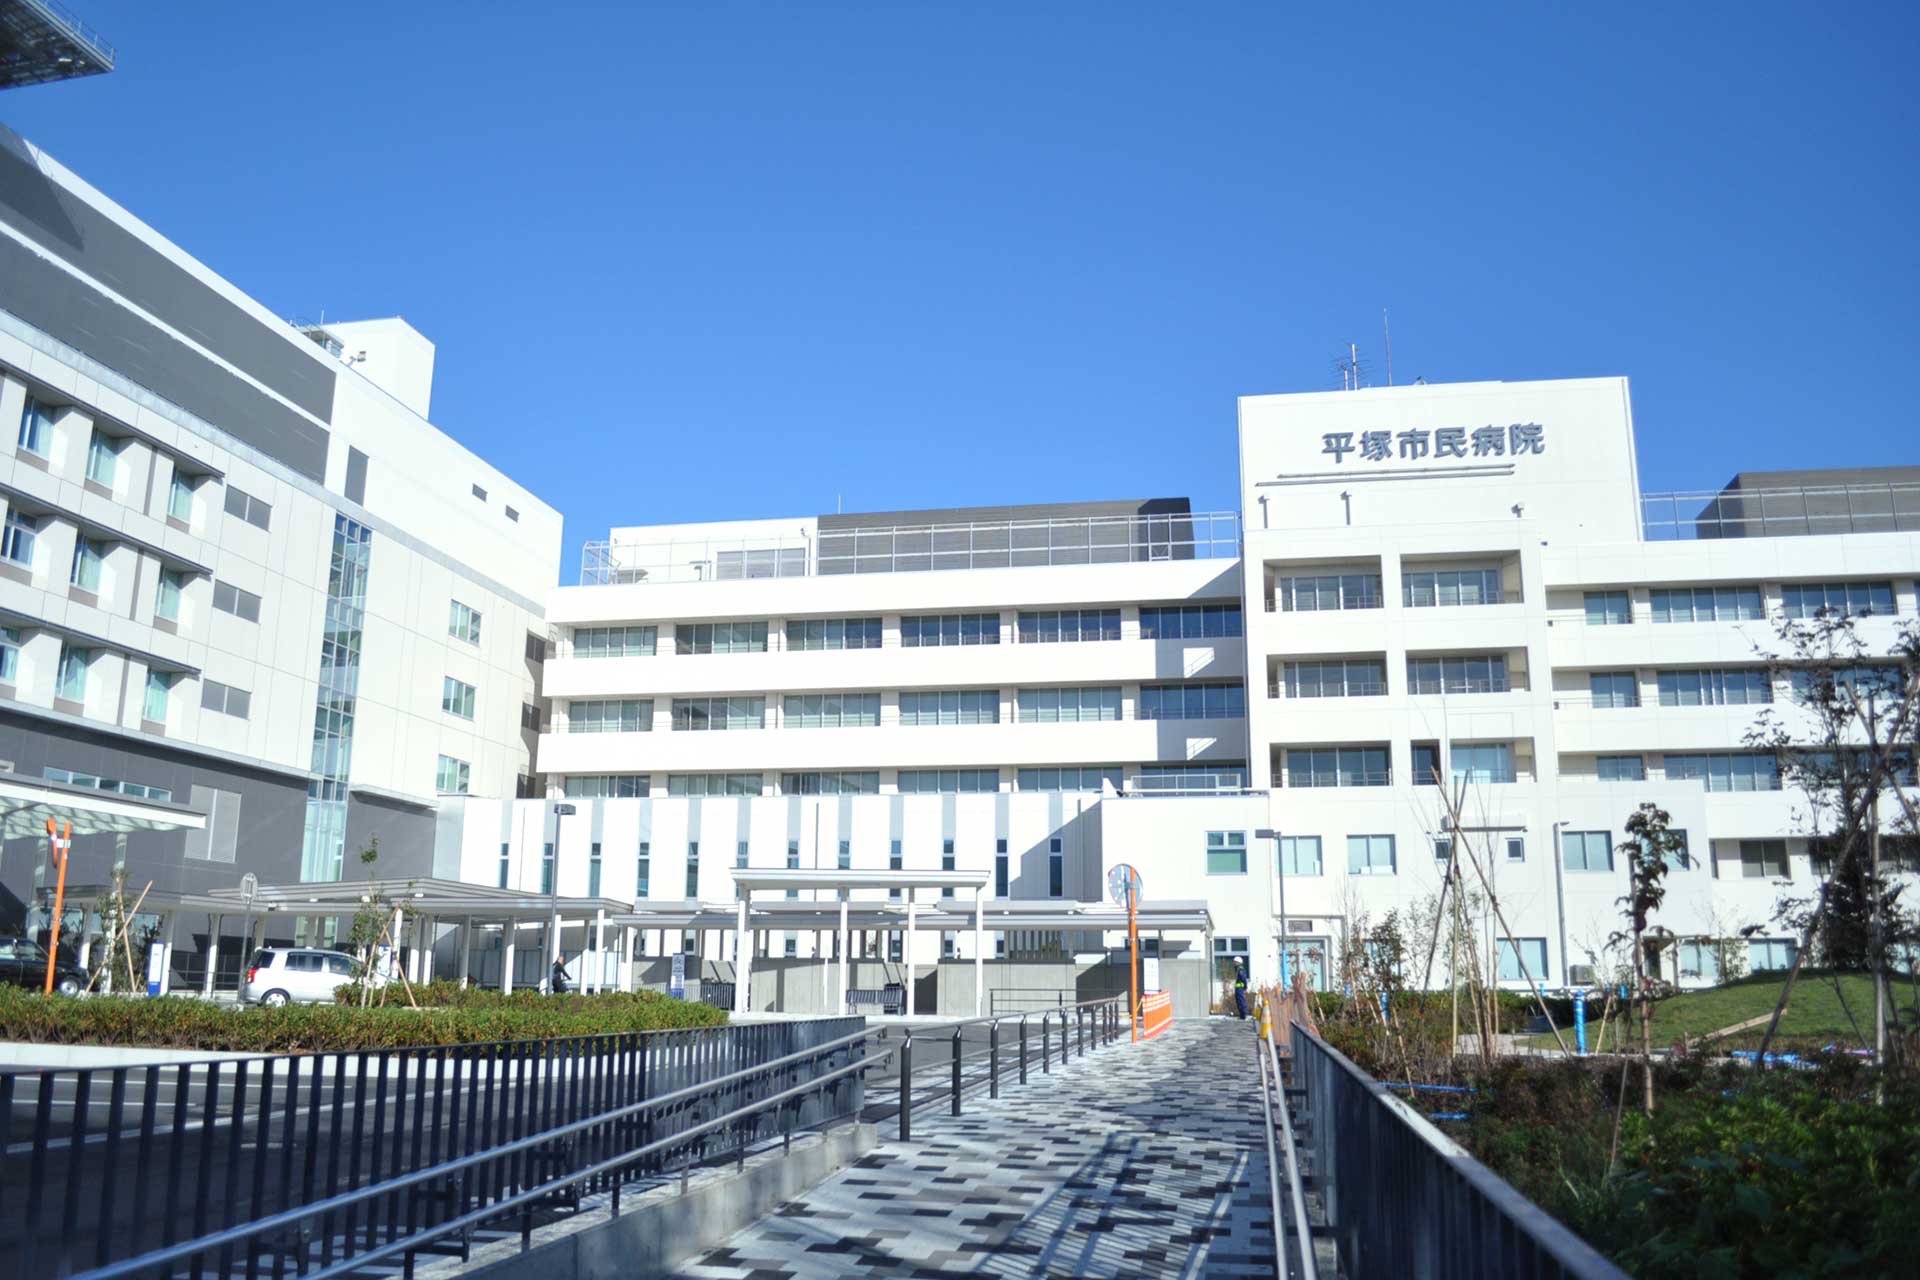 平塚市民病院 - 救急指定病院・災害拠点病院・地域医療支援病院